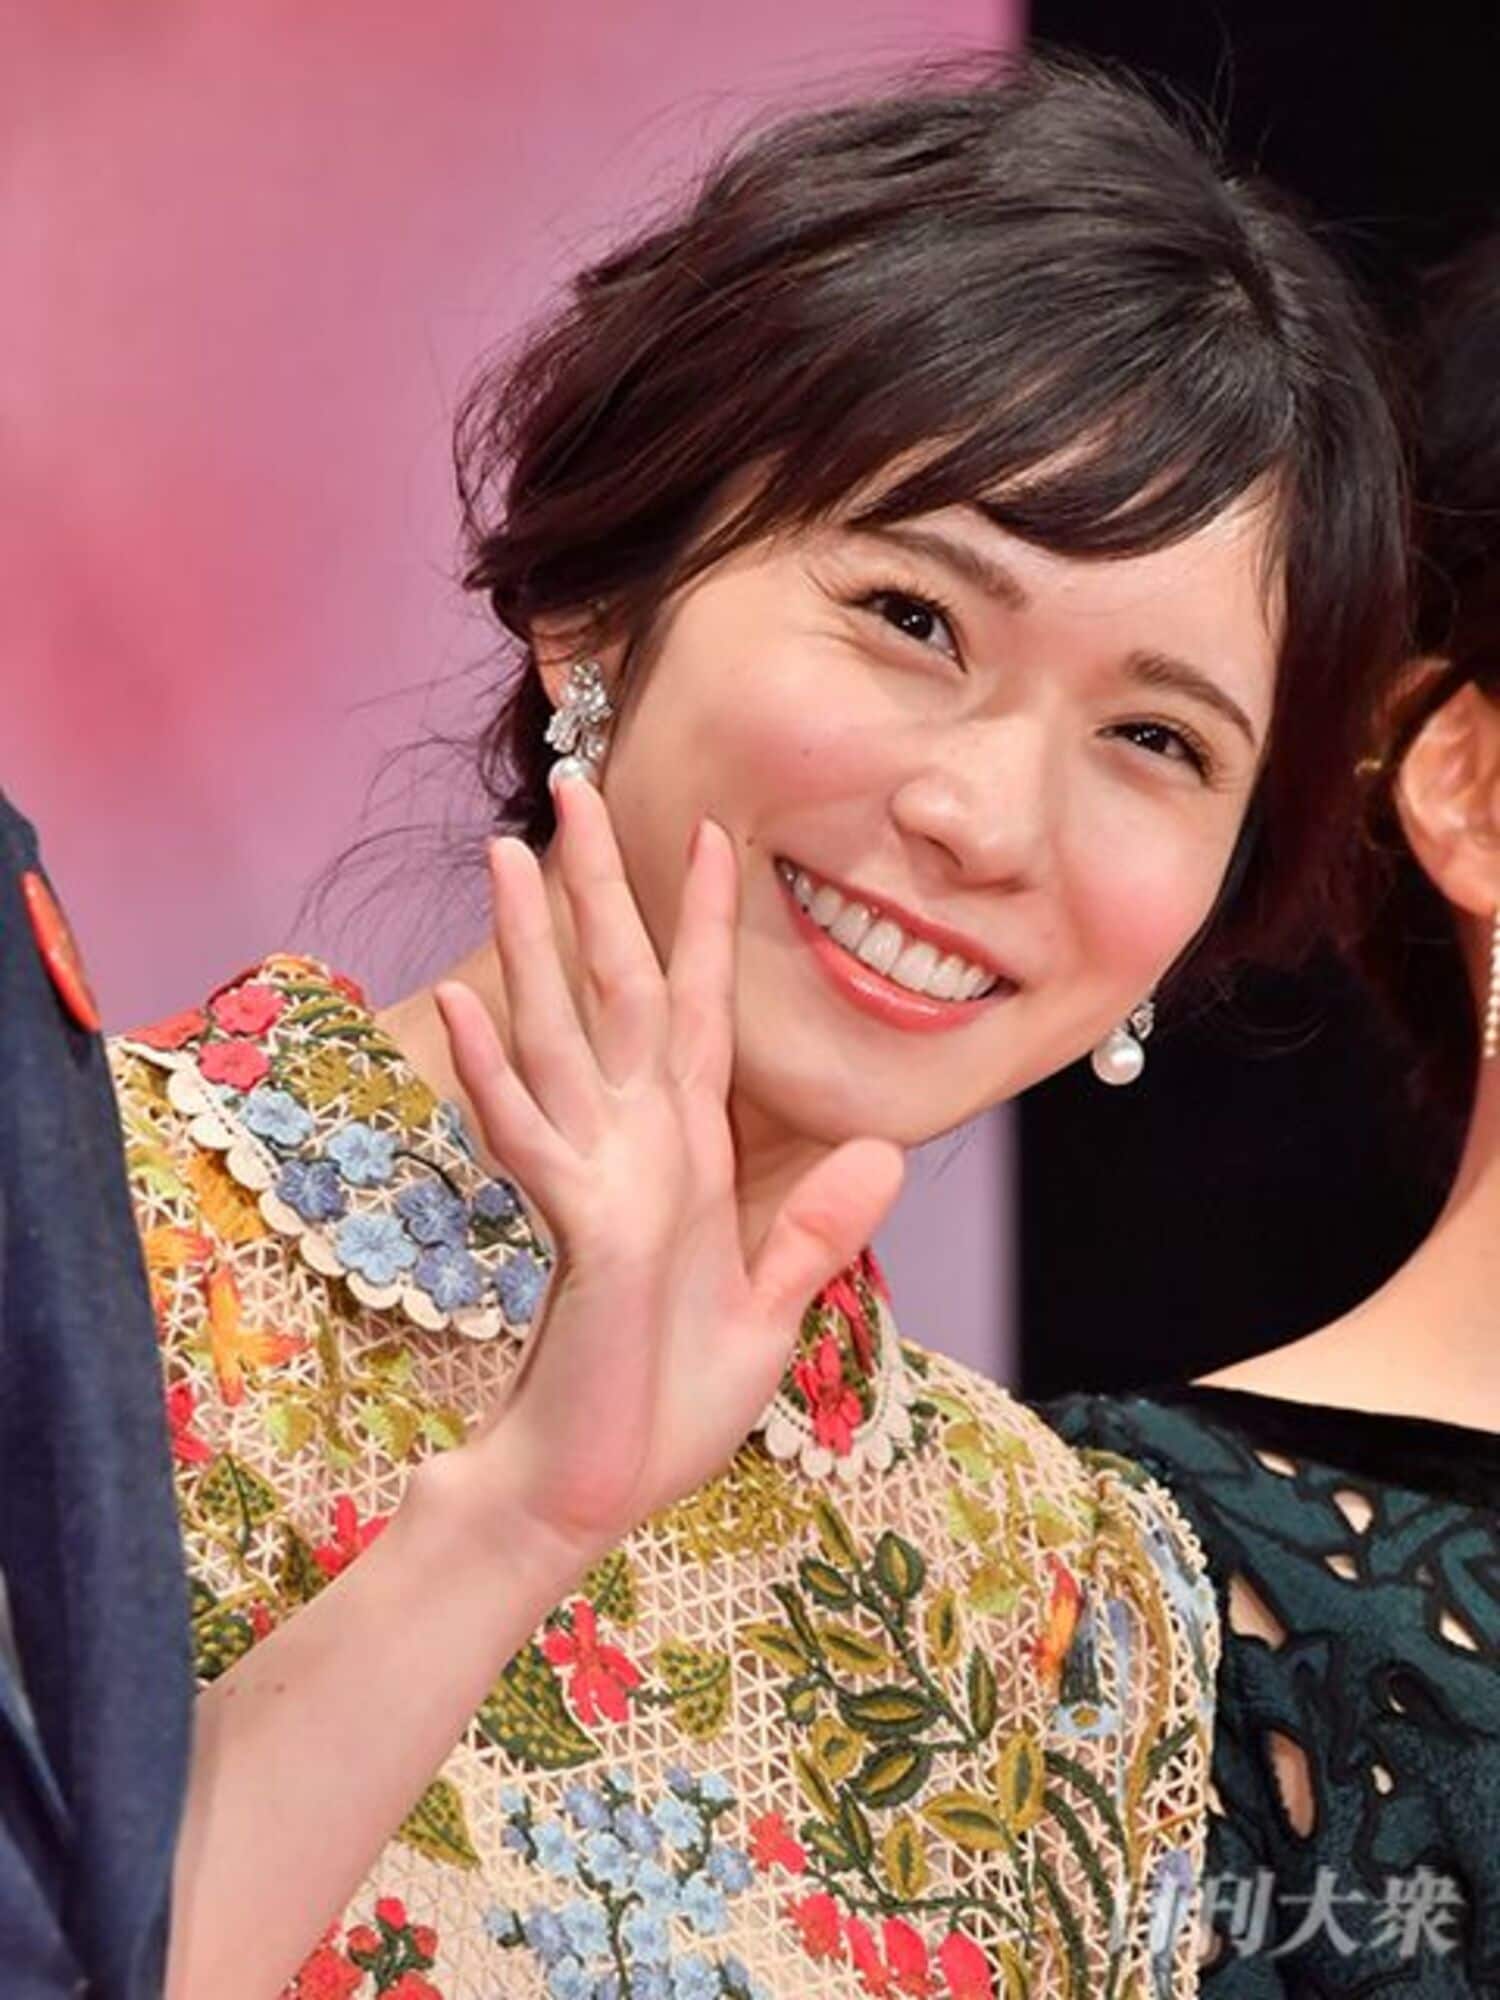 東京国際映画祭、松岡茉優の髪型チェンジに賛否両論!?の画像